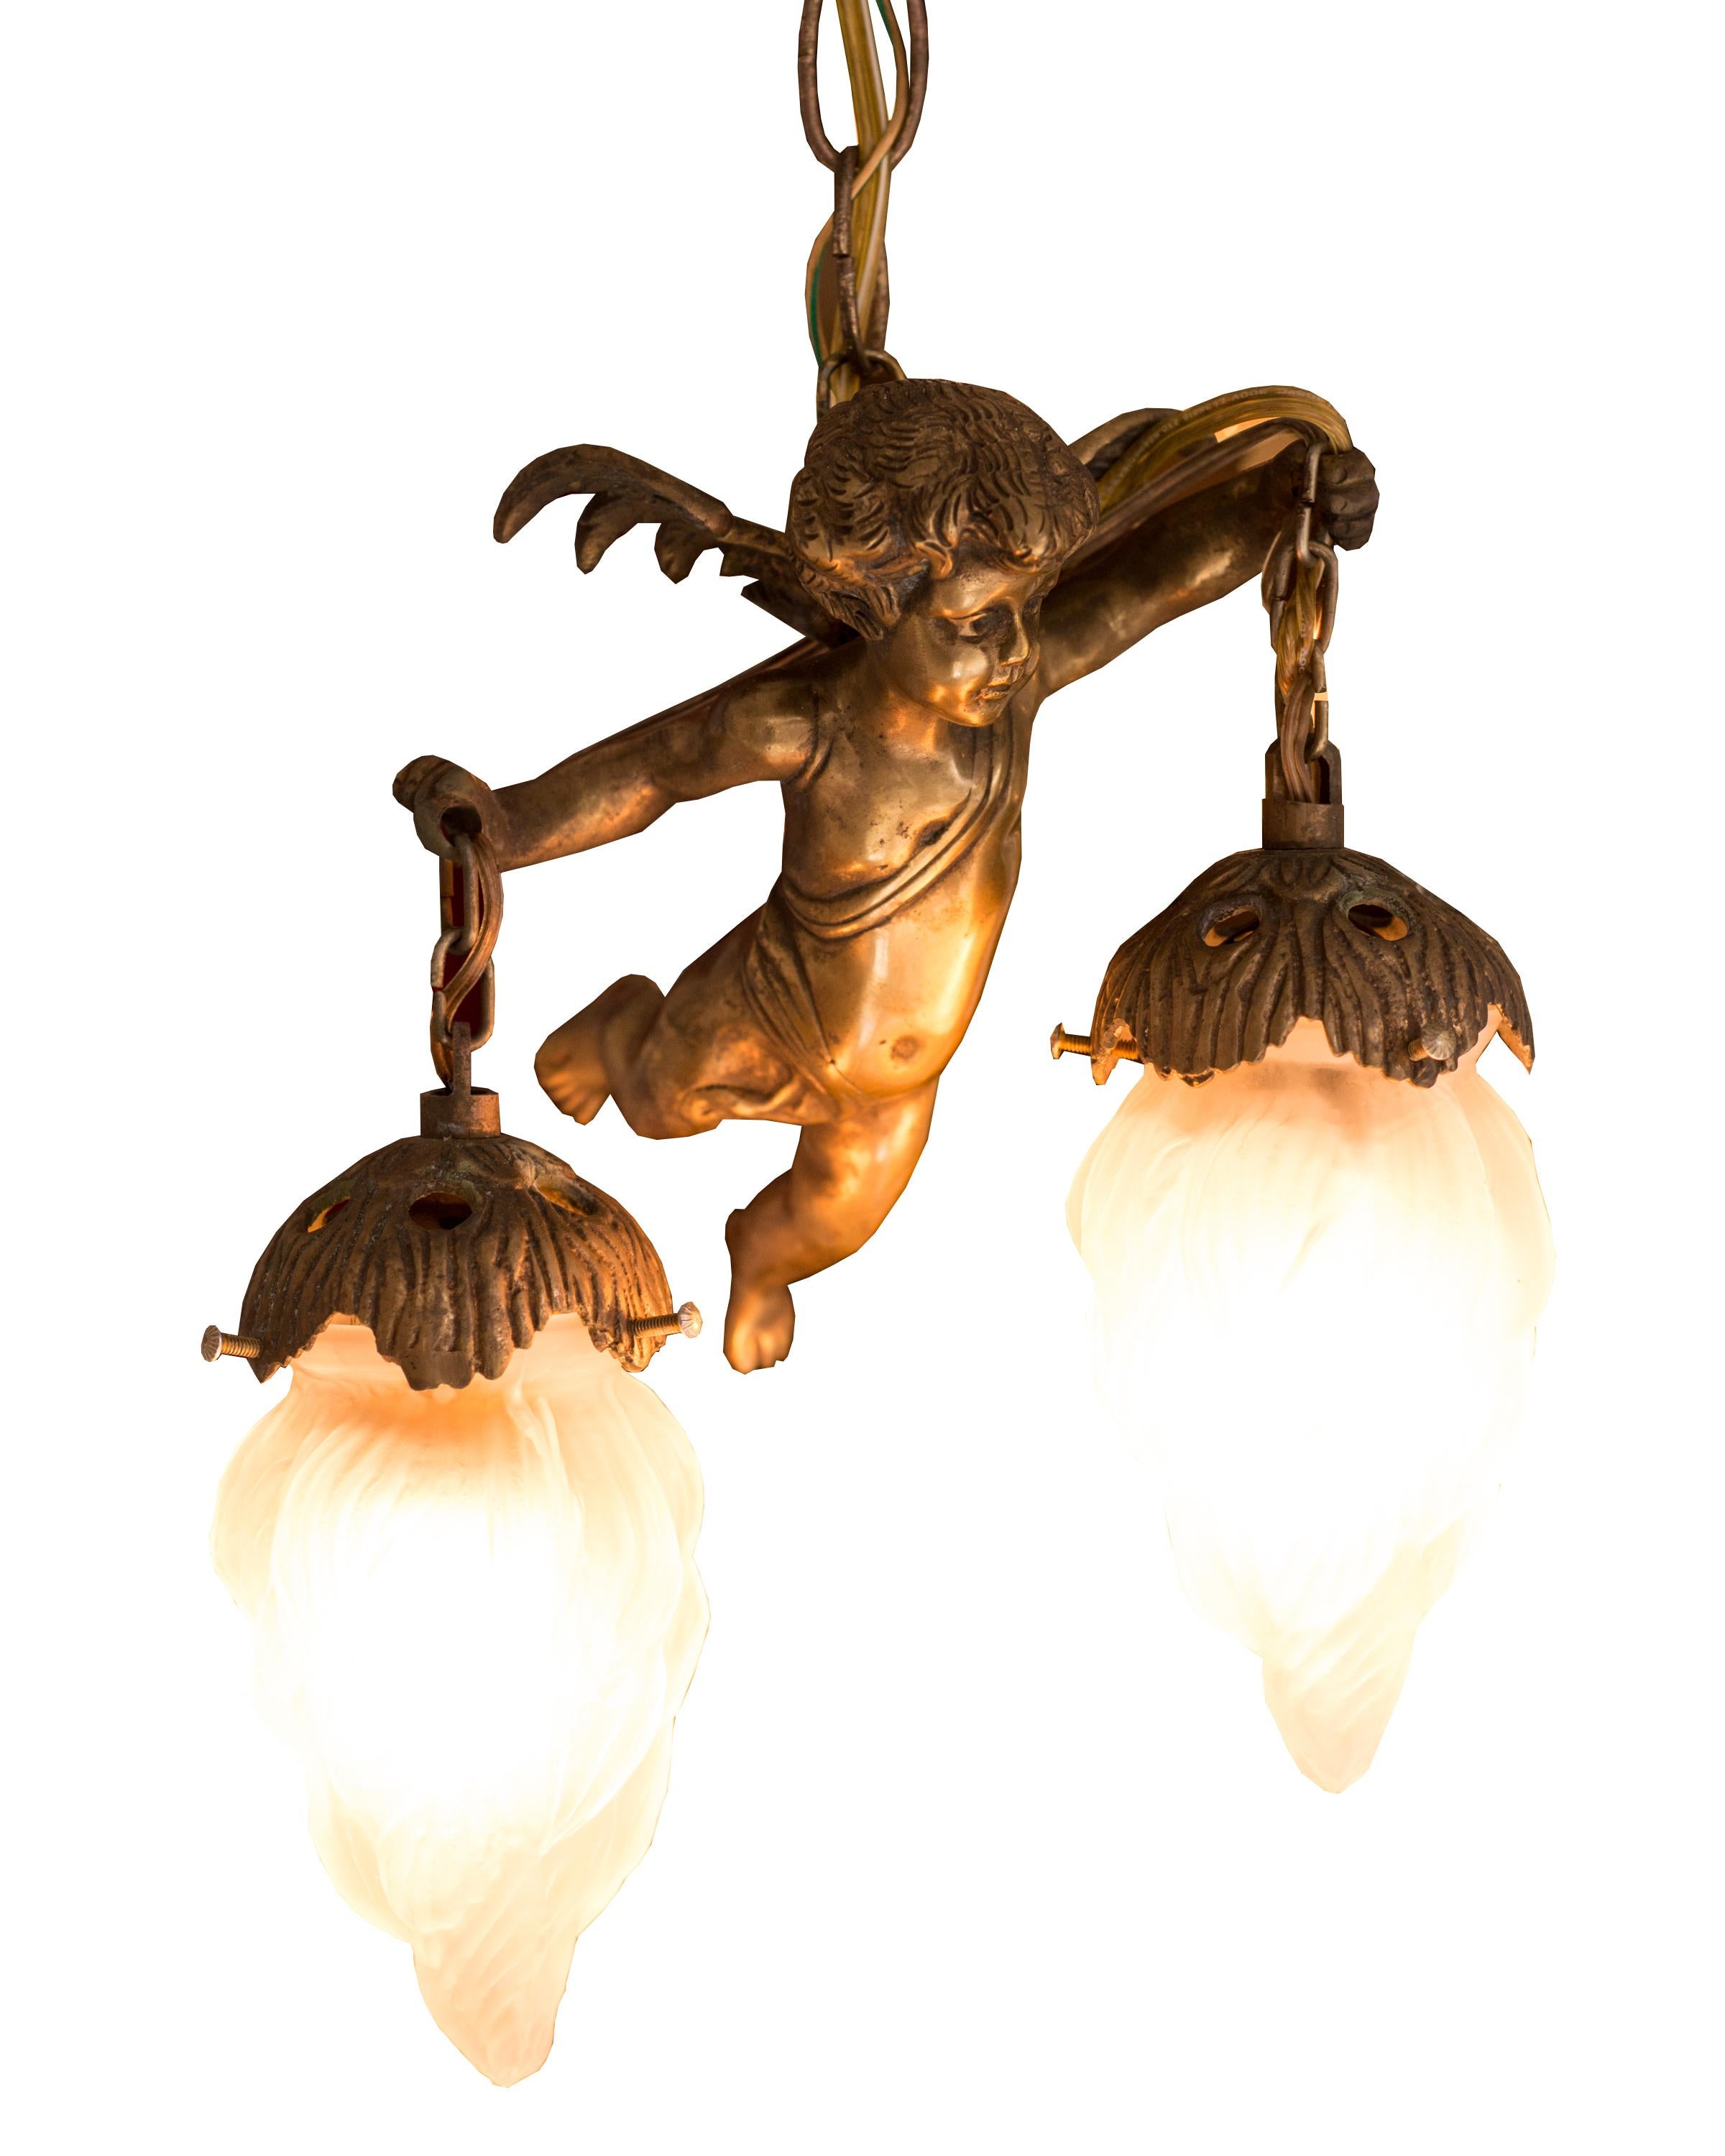 Ces pendentifs chérubins fantaisistes en bronze antique sont vraiment divins. Chaque chérubin en bronze massif tient une ampoule en forme de flamme dépolie recouverte de chaque bras et est suspendu au plafond par 3 pieds de chaîne assortie. Nous